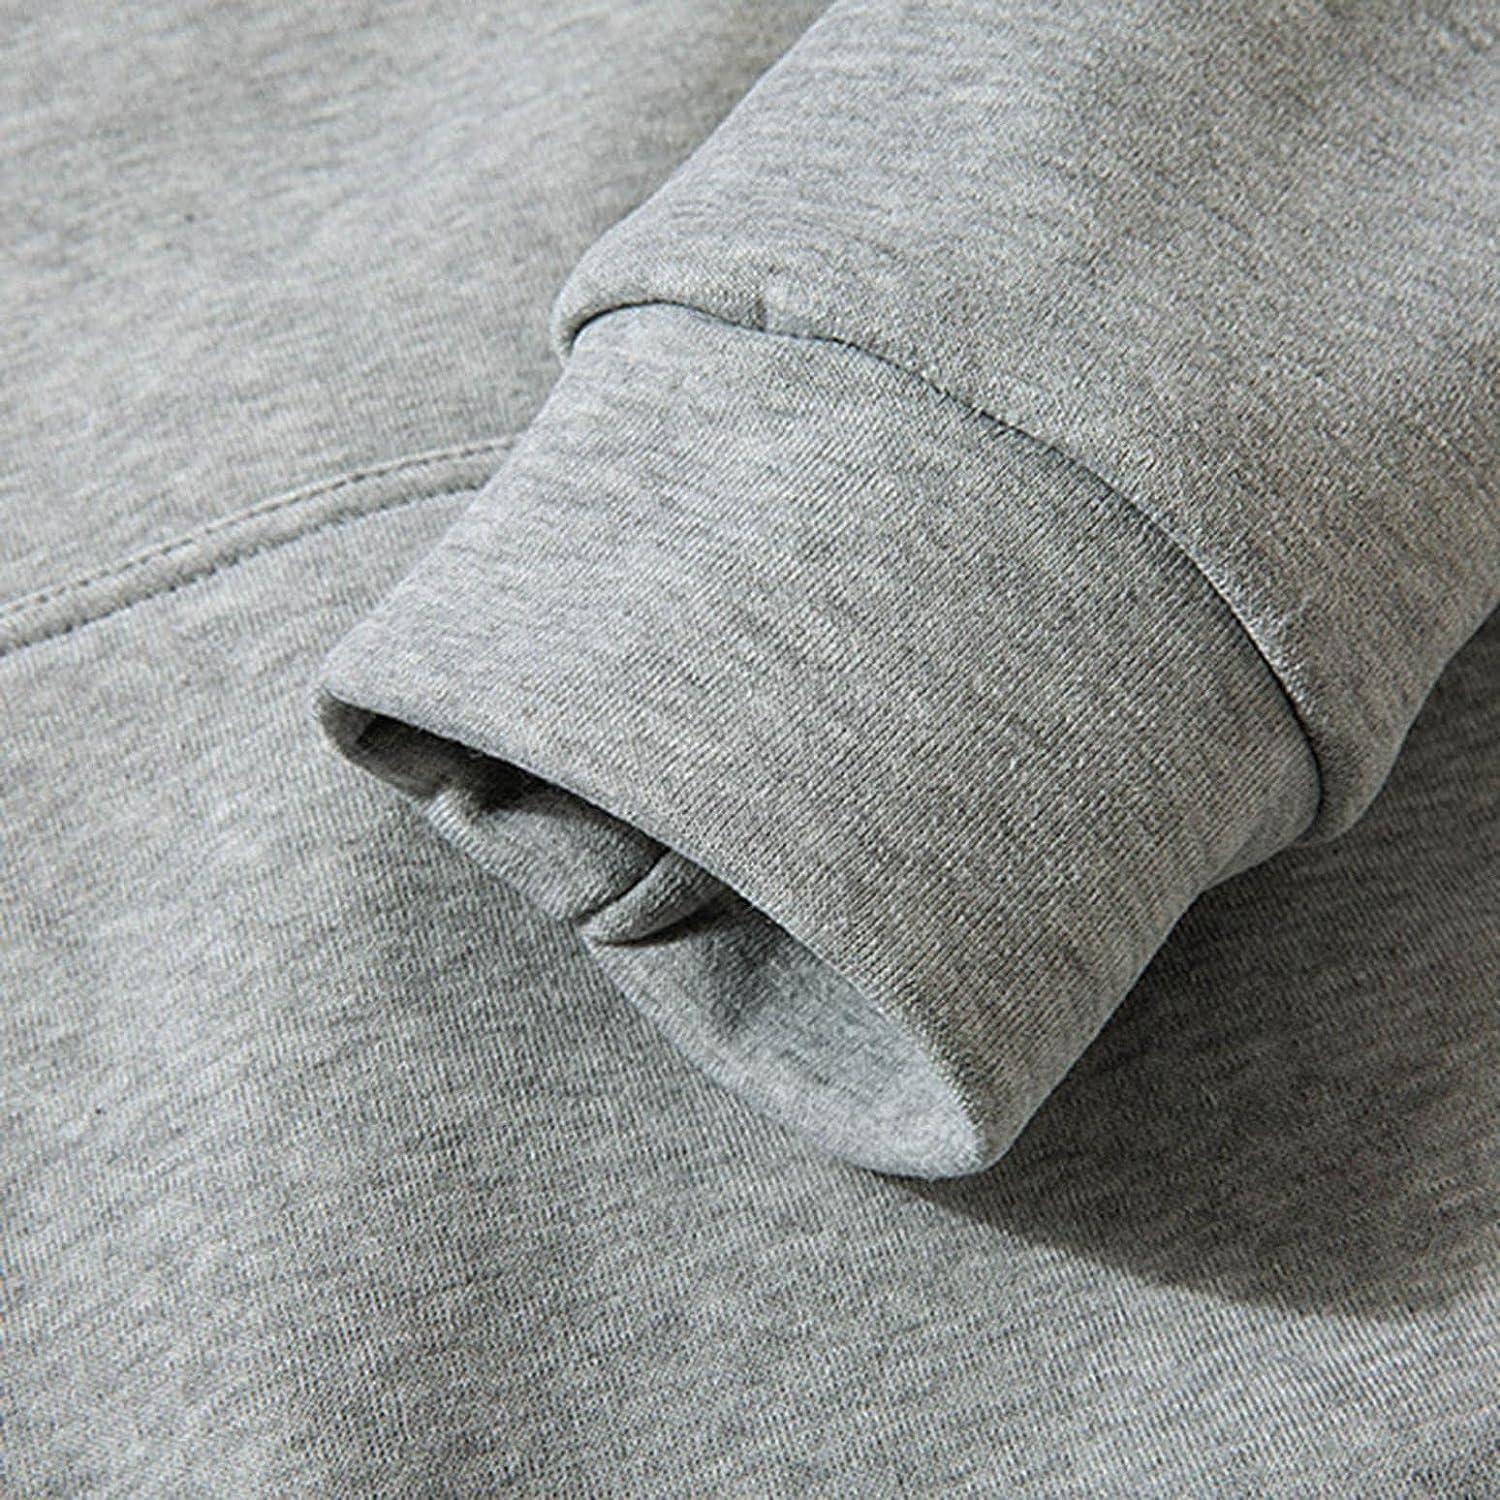 Fleece Lined Hooded Sweatshirts